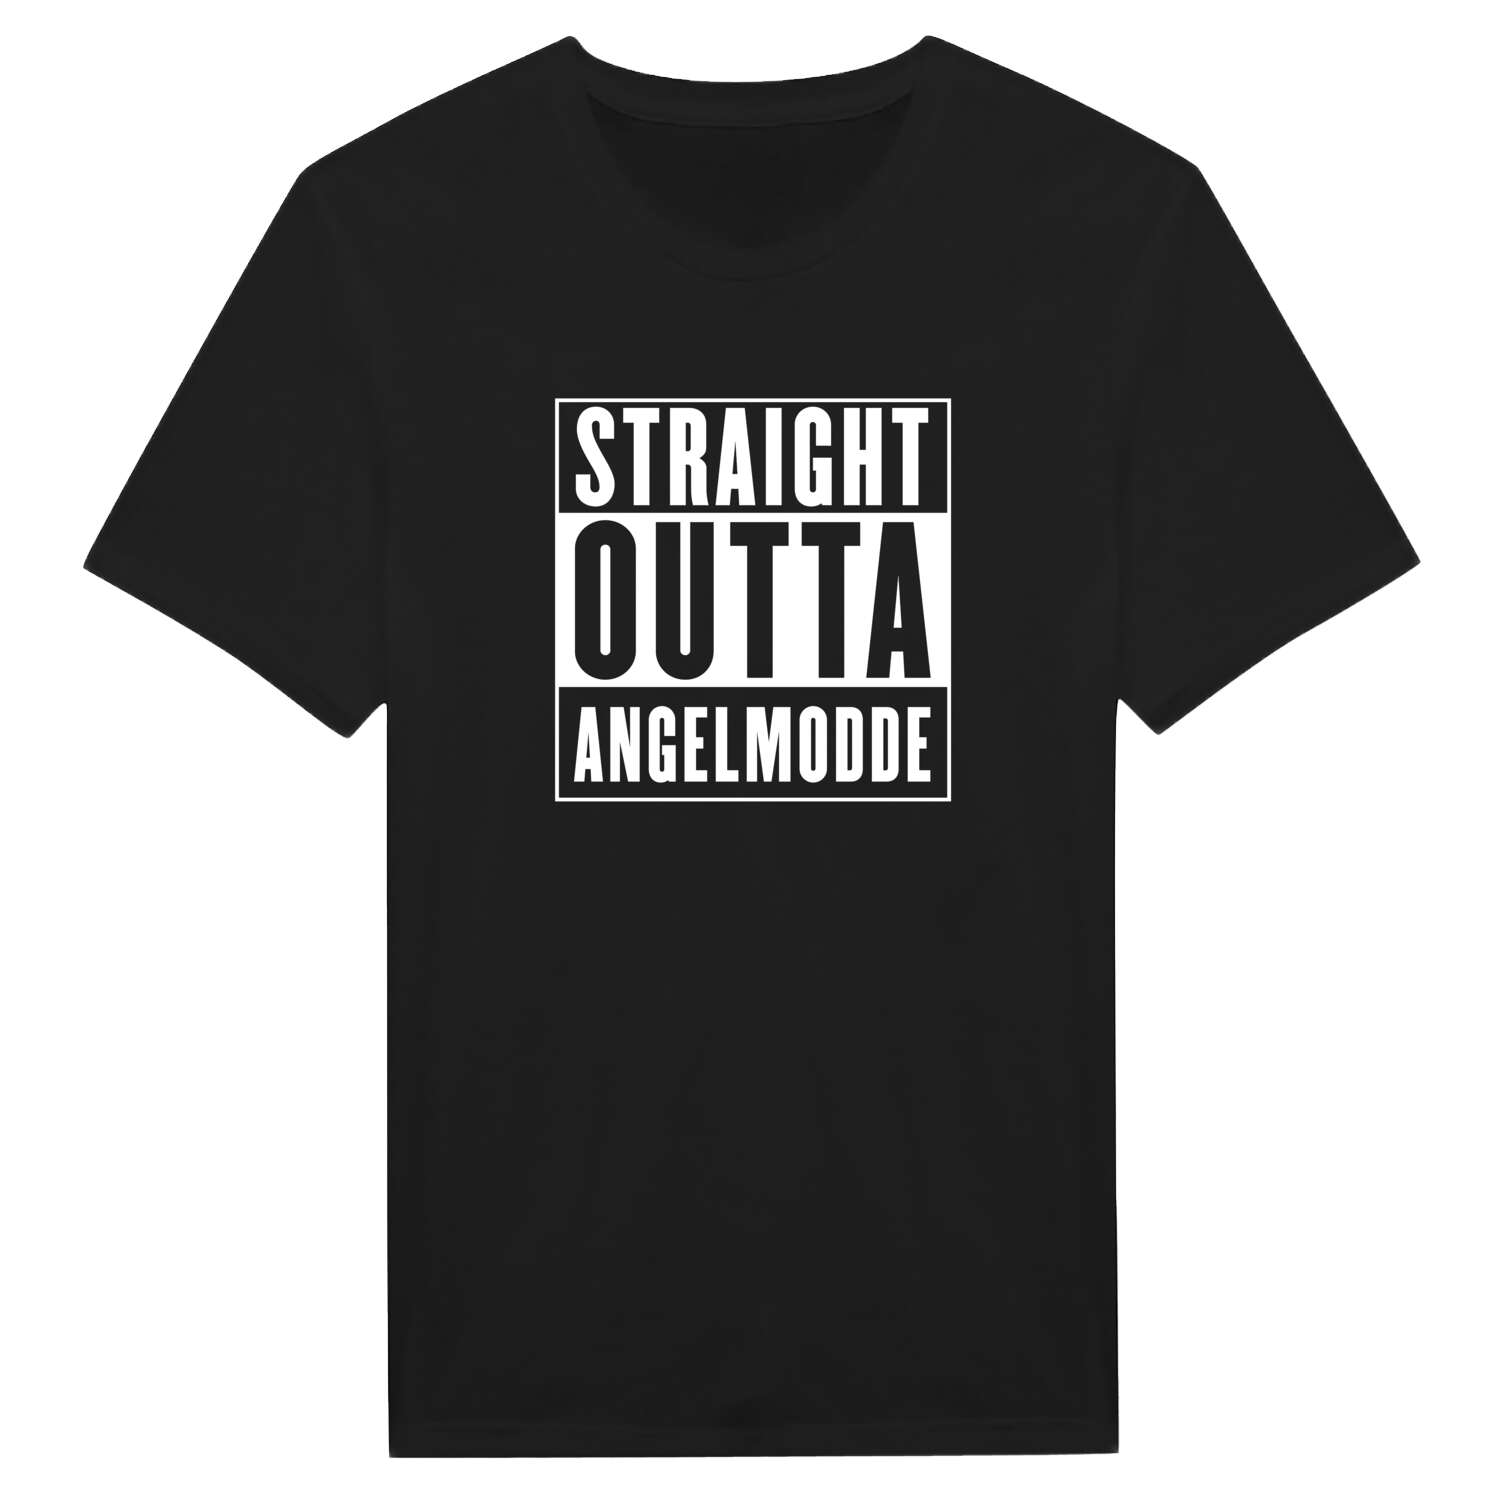 Angelmodde T-Shirt »Straight Outta«